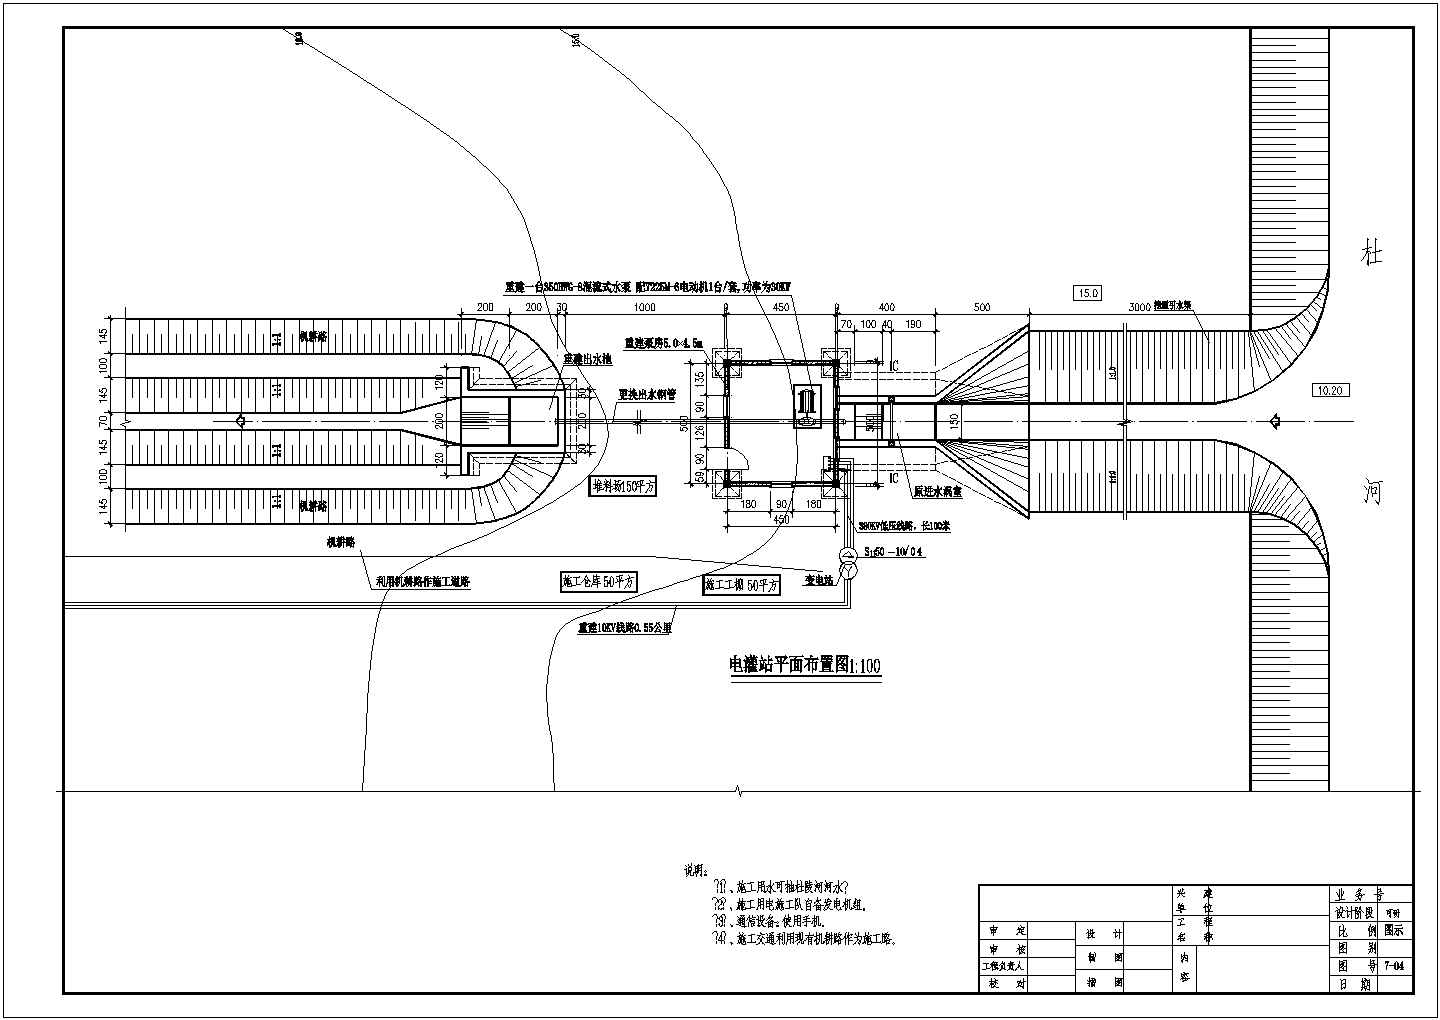 灌区抽水电灌站设计图（平面图、布置图、剖面图）